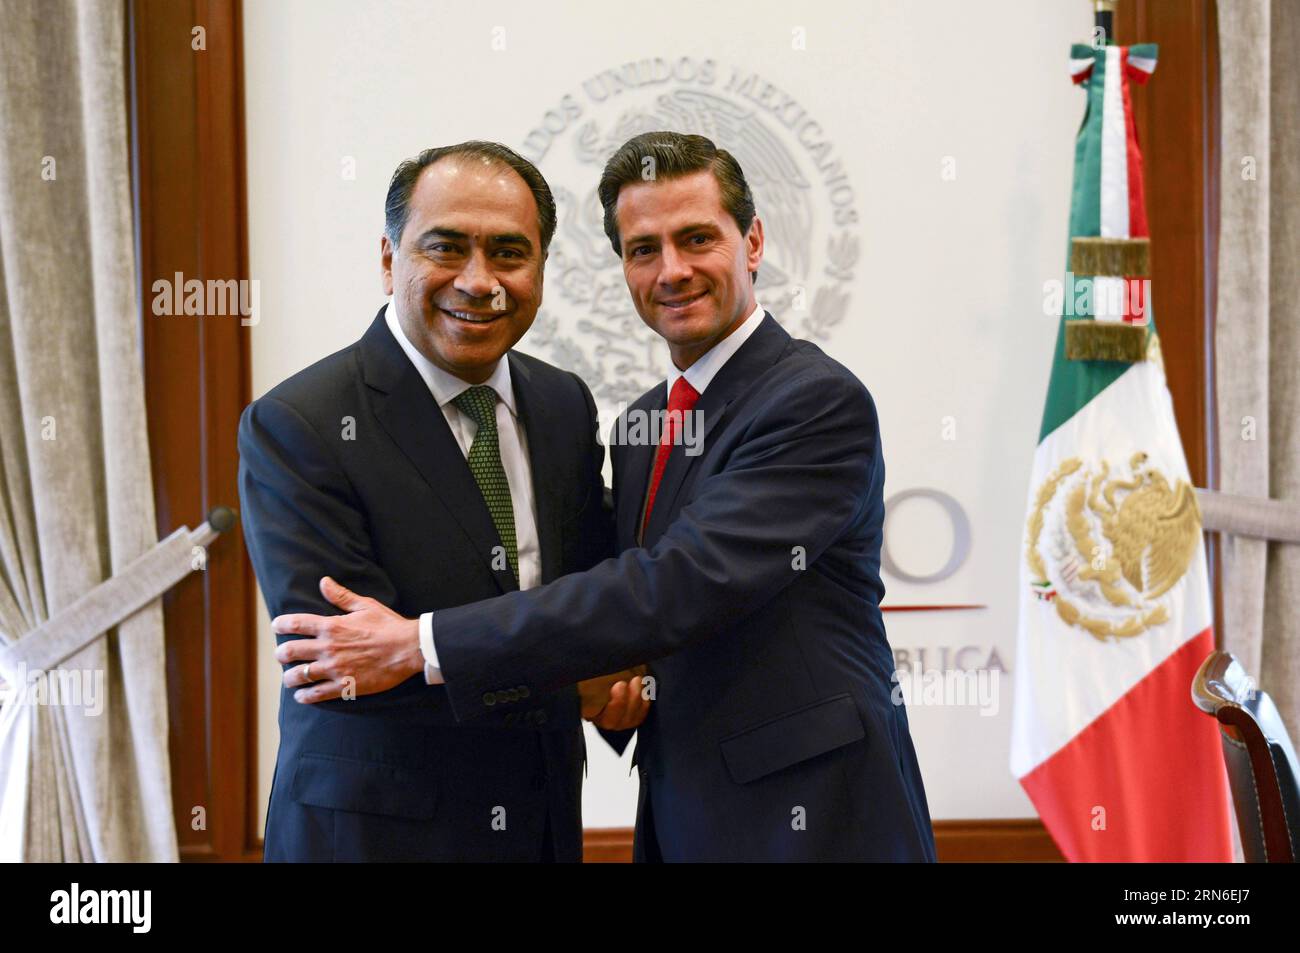 (150723) -- MEXICO, 22 juillet 2015 -- image fournie par le président mexicain Enrique Pena Nieto (à droite) posant pour des photos avec le gouverneur élu de l'État de Guerrero Hector Astudillo Flores à la résidence officielle Los Pinos à Mexico, capitale du Mexique, le 22 juillet 2015. Enrique Pena Nieto et Hector Astudillo Flores ont parlé de la mise en œuvre des zones économiques spéciales et des actions sur le développement social et les infrastructures, selon la presse locale. MEXICO-MEXICO CITY-POLITICS-PRESIDENT MEXICO SxPRESIDENCY PUBLICATIONxNOTxINxCHN 150723 Mexico City juillet 22 2015 image fournie par Show Banque D'Images